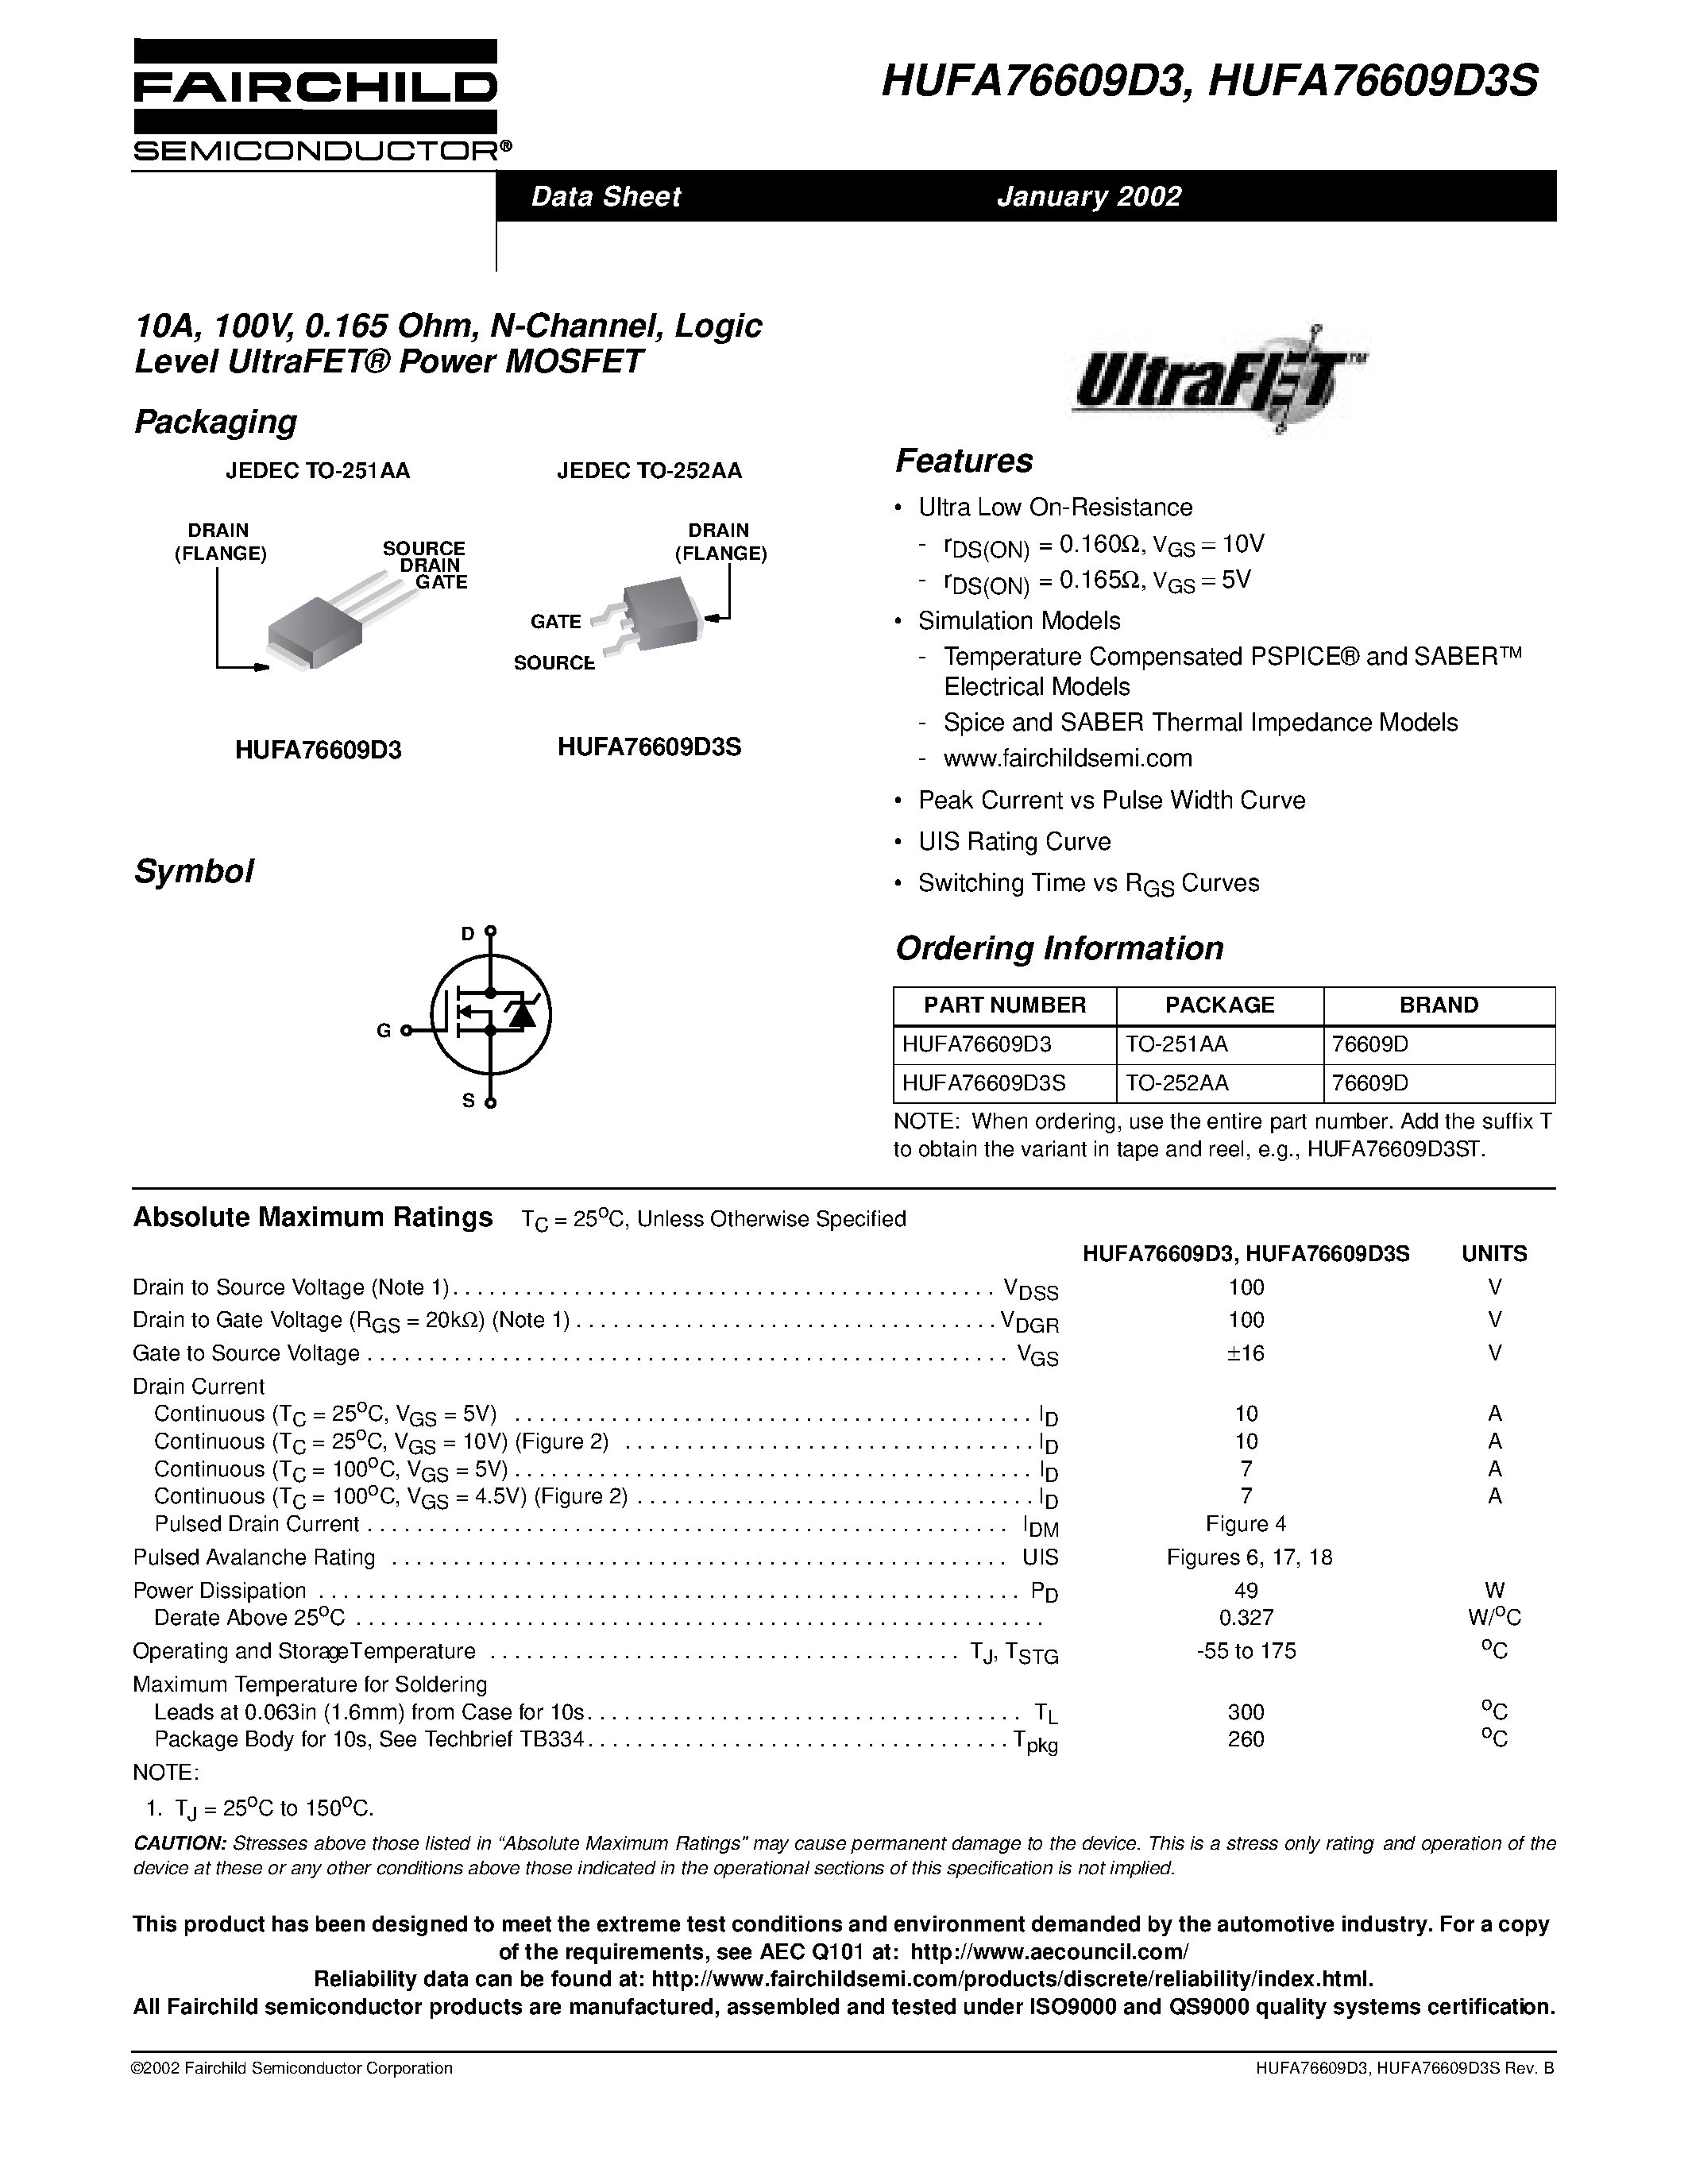 Даташит HUFA76609D3 - 10A/ 100V/ 0.165 Ohm/ N-Channel/ Logic Level UltraFET Power MOSFET страница 1